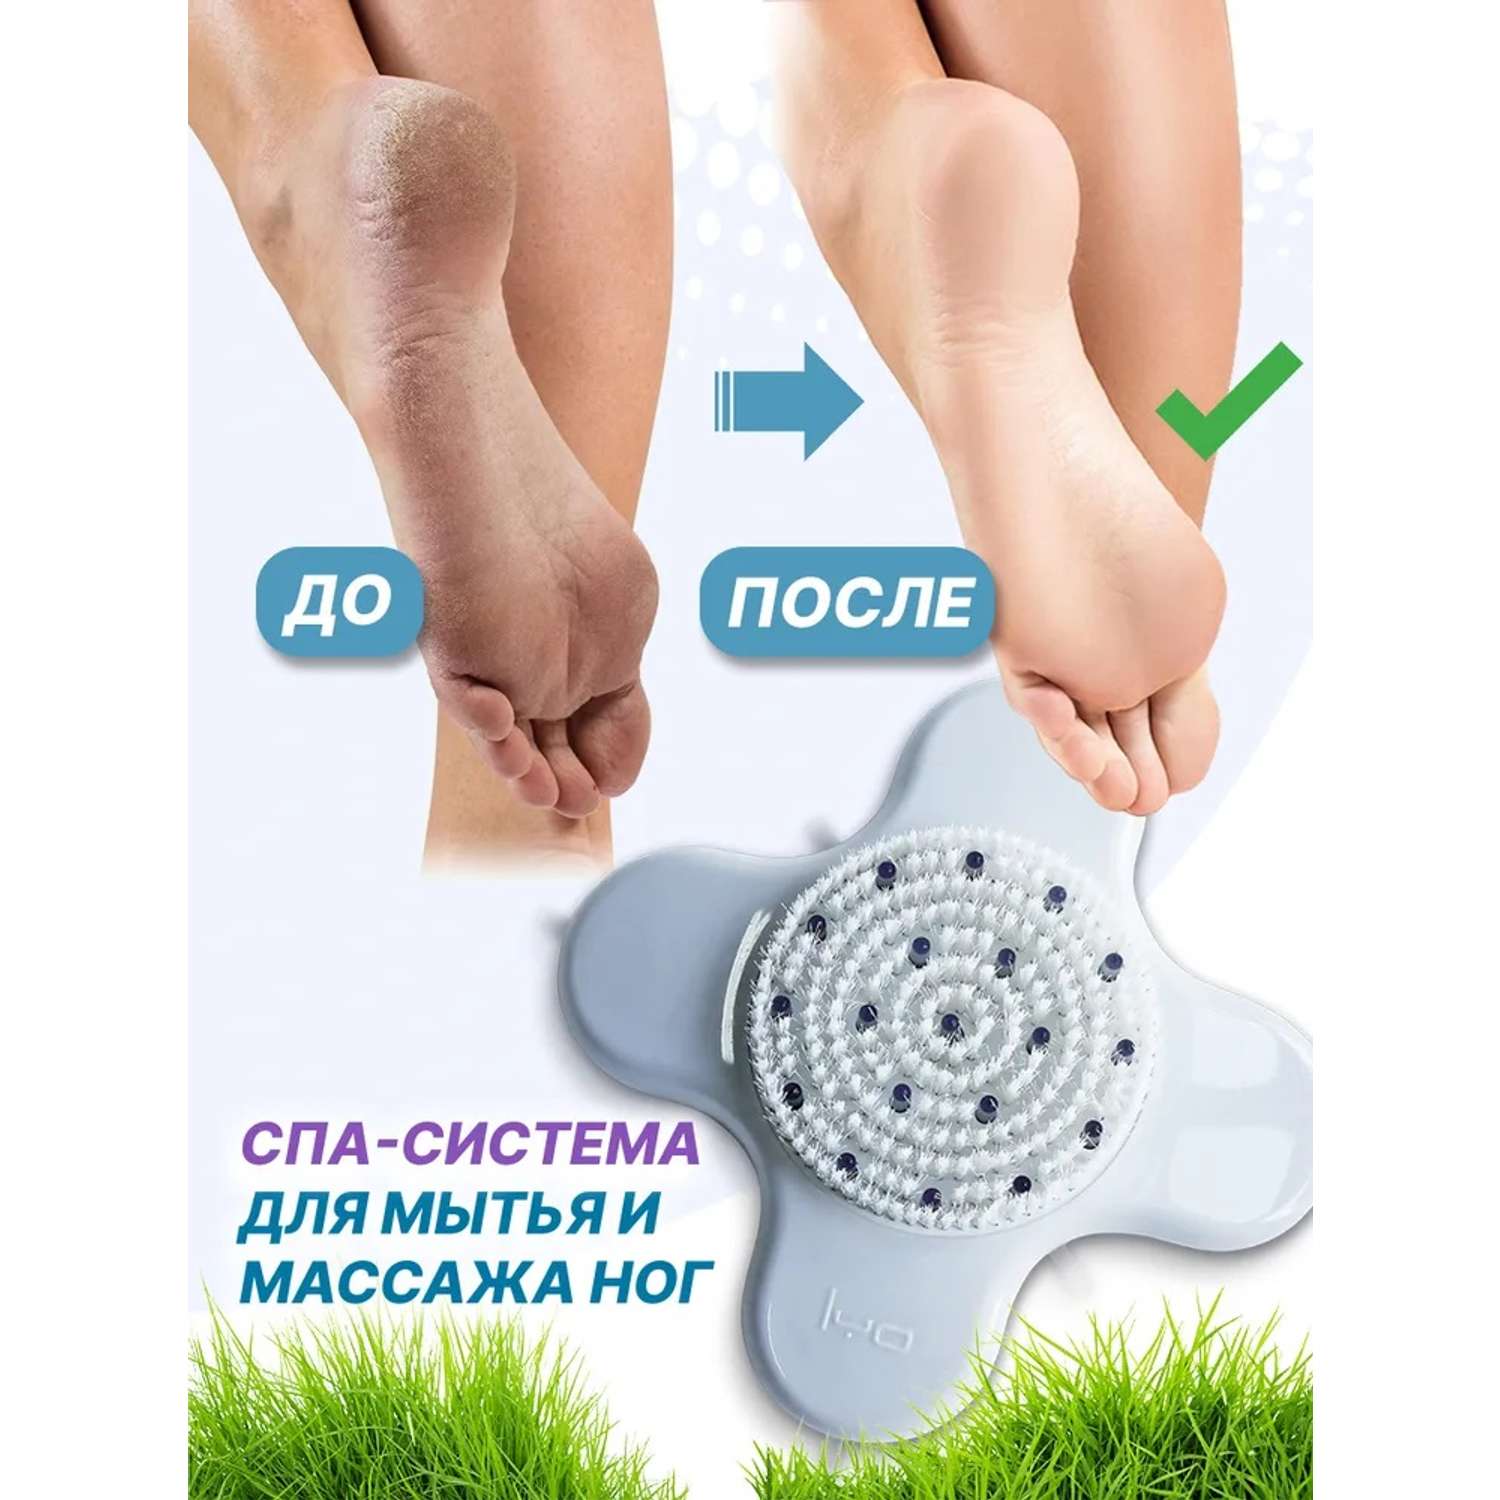 Щетка-массажер FEETBRUSH на присосках для мытья и массажа ног - фото 7